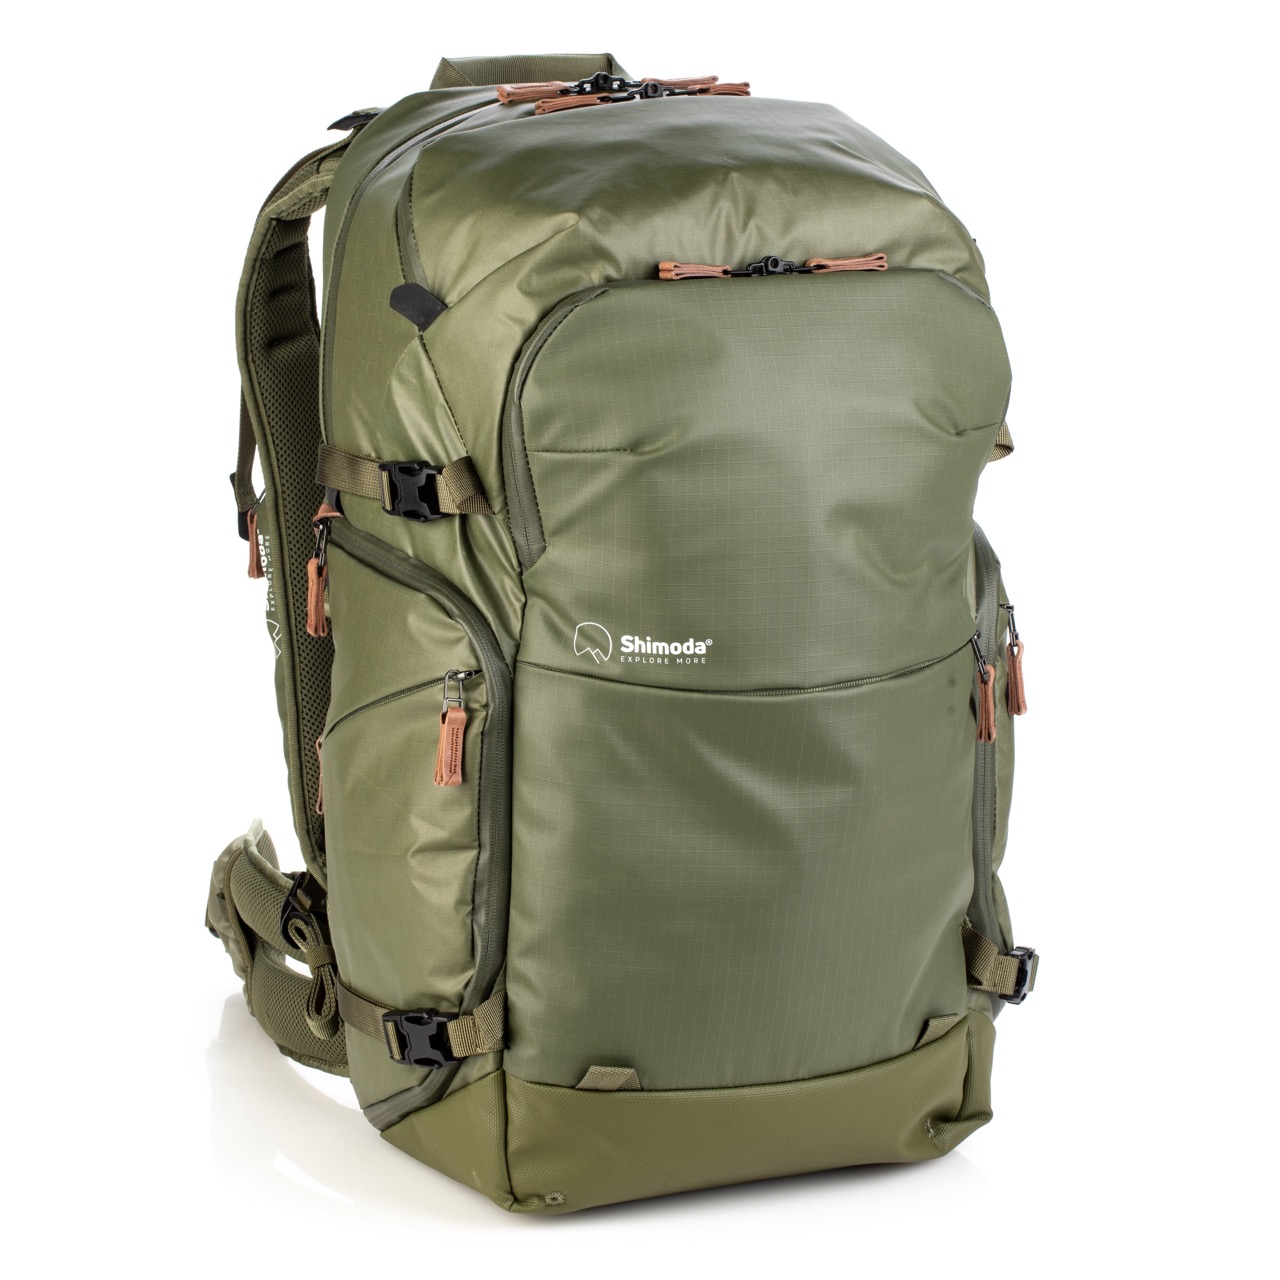 Shimoda Designs Explore v2 35 Rucksack in Armeegrün, von vorne leicht schräg